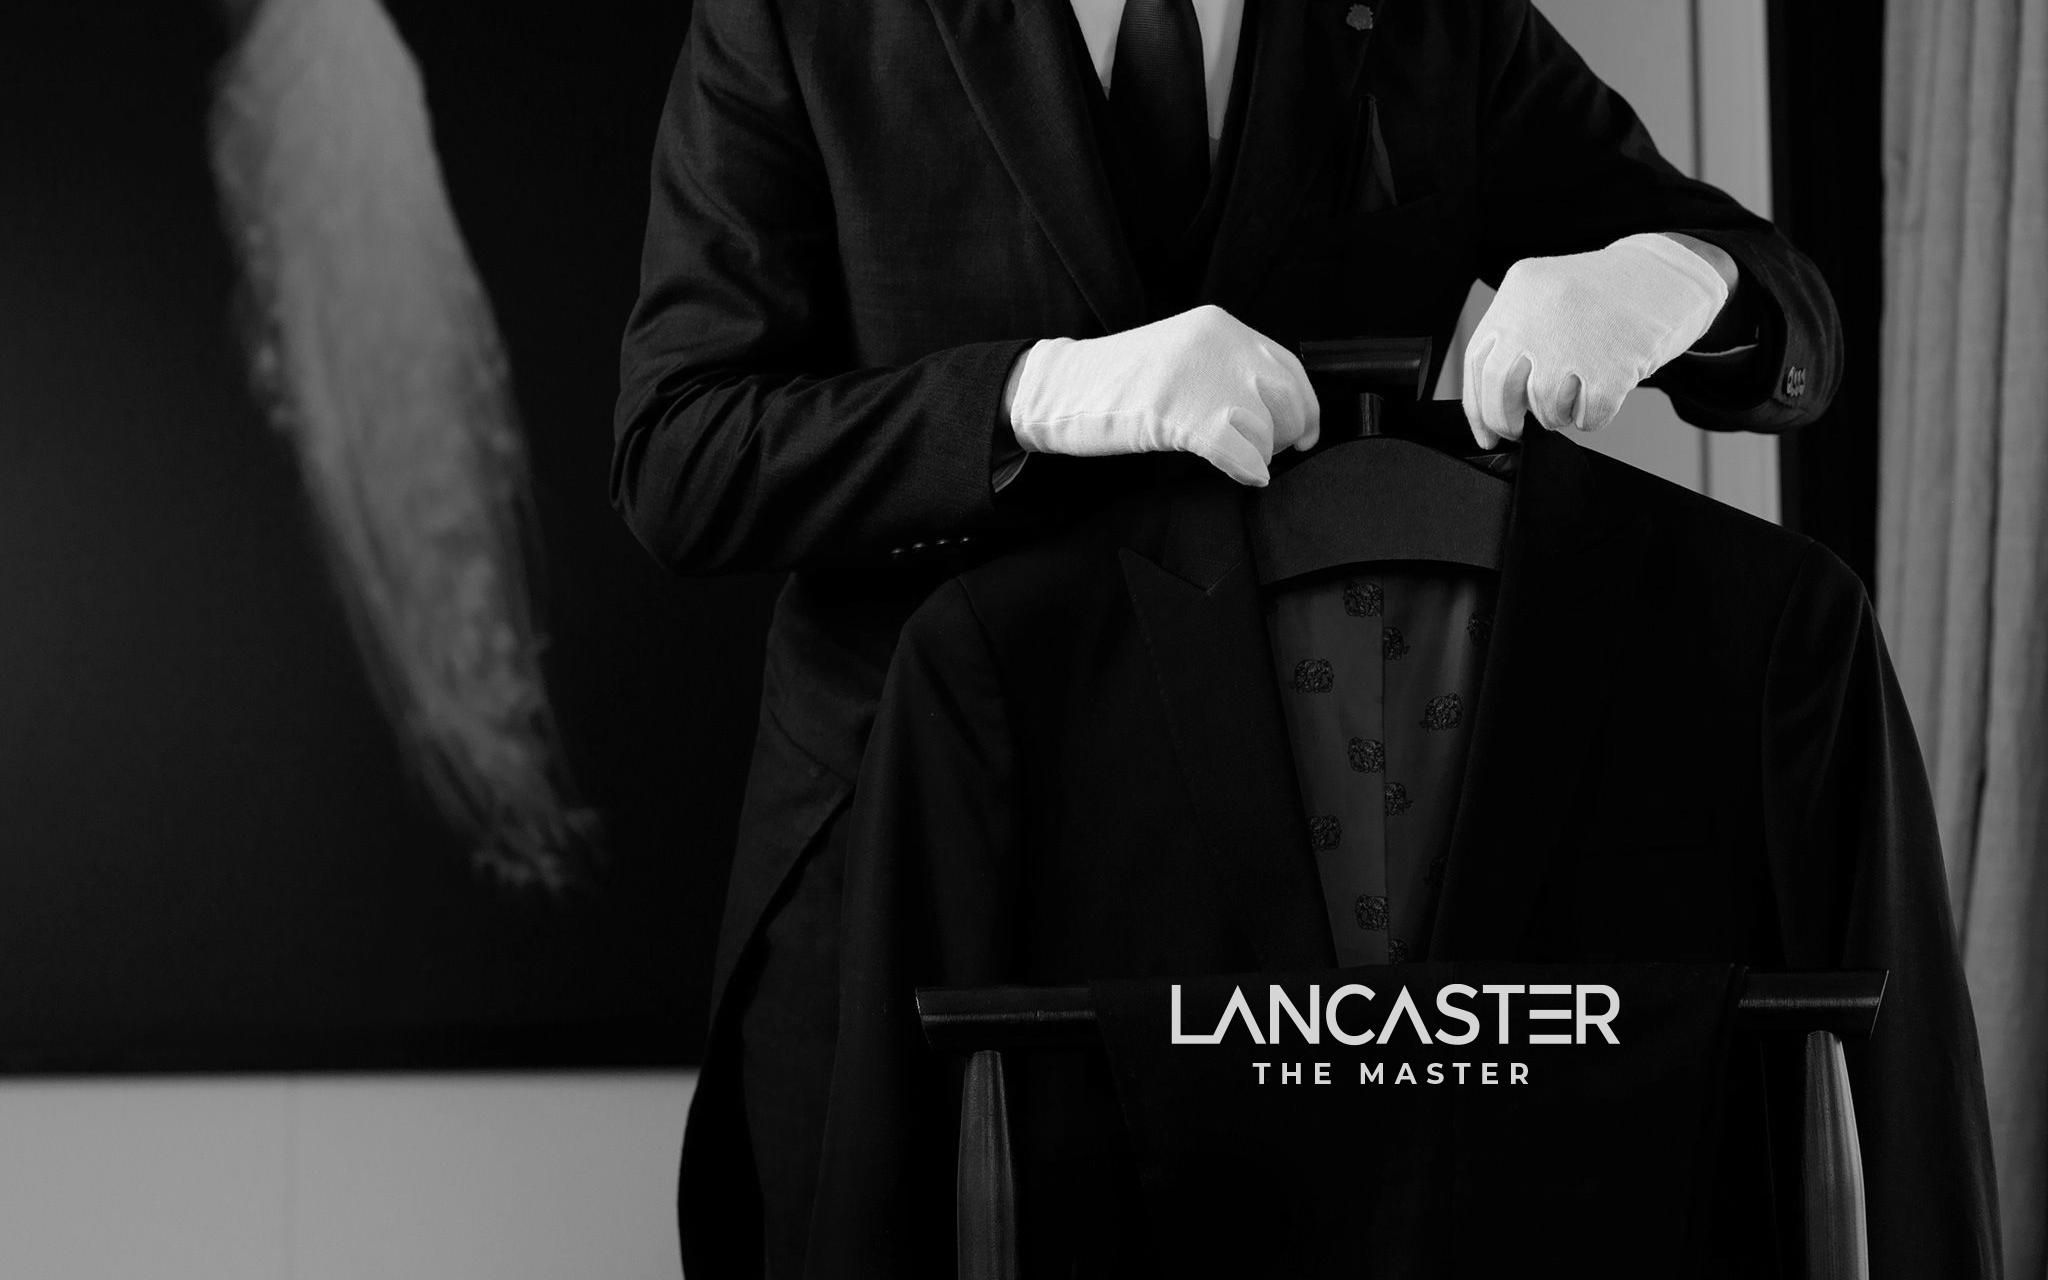 Tập đoàn Trung Thủy chào đón Lancaster The Master và ra mắt câu lạc bộ danh giá Lancaster Club - ảnh 1